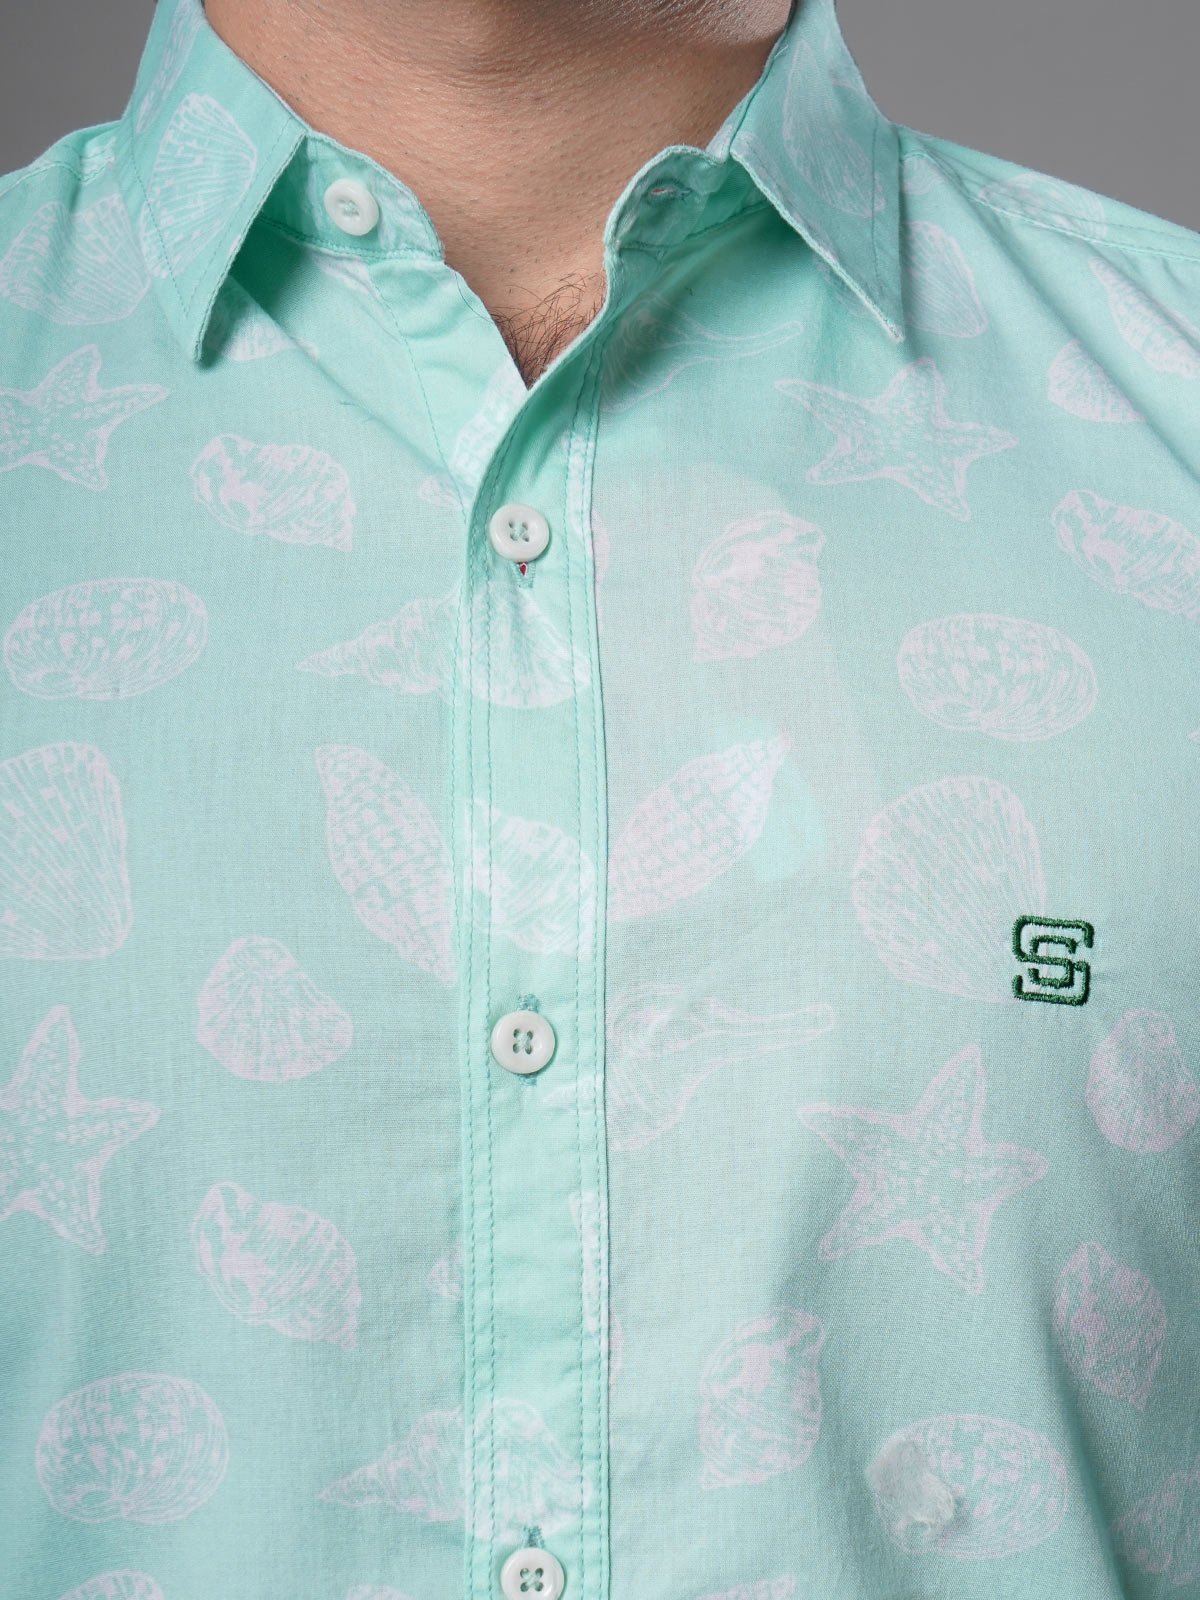 Sea Green Printed Casual Shirt (CSP-114)